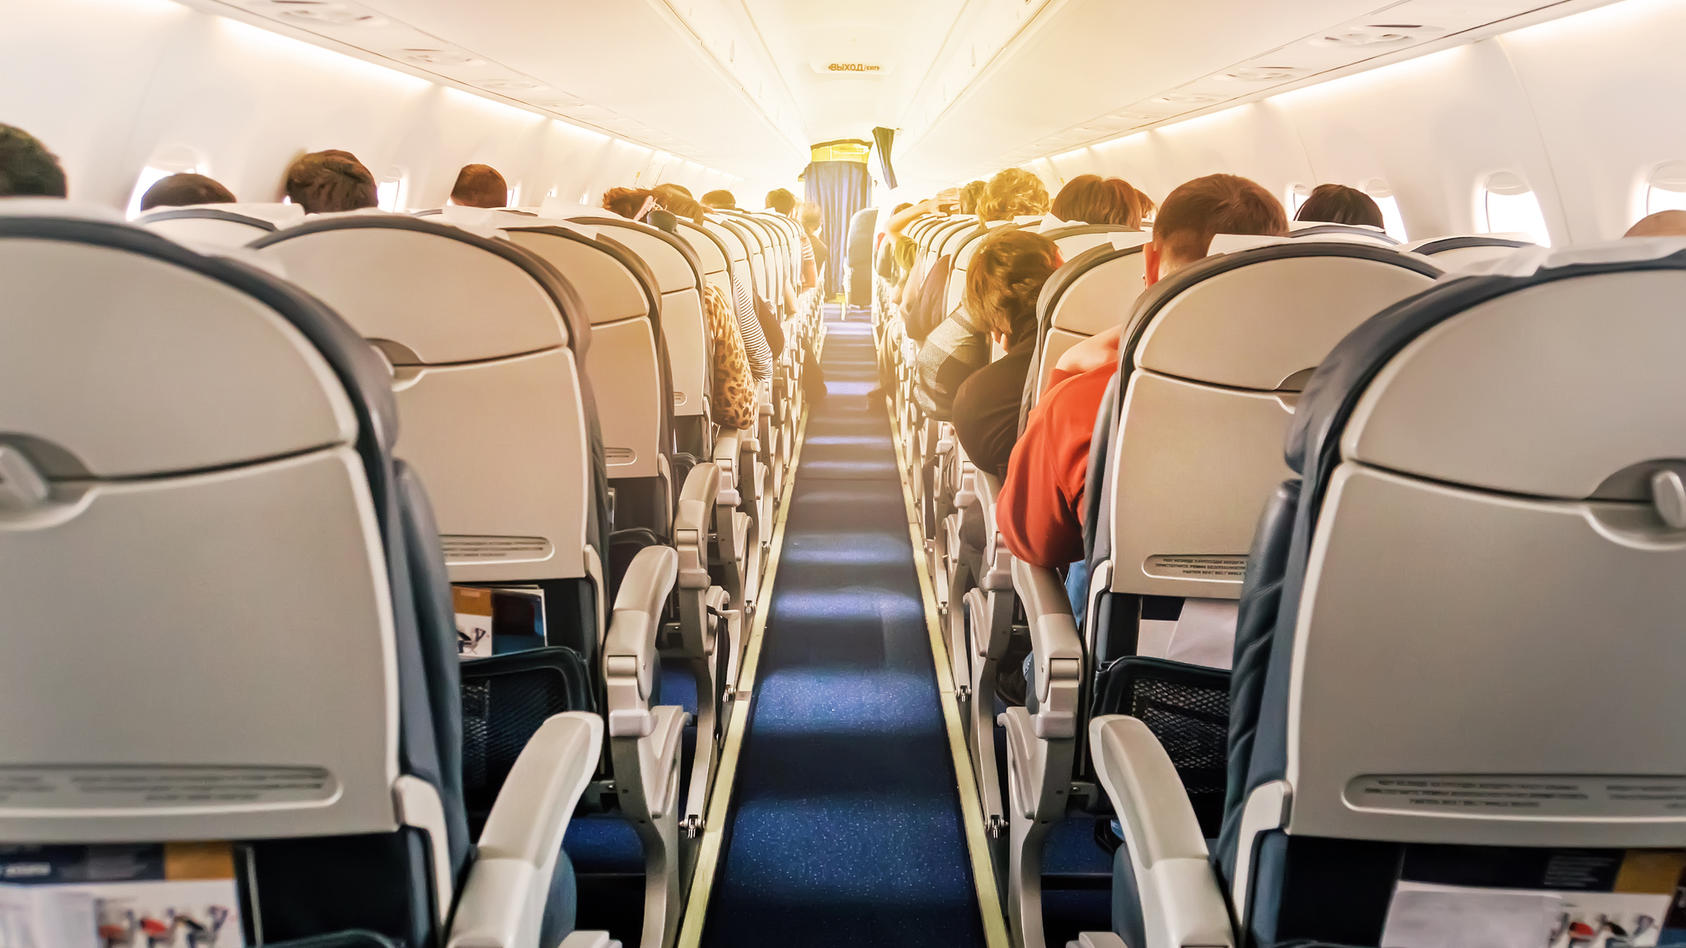 Todesfall im Flugzeug - Passagier stirbt an Bord - was dann?